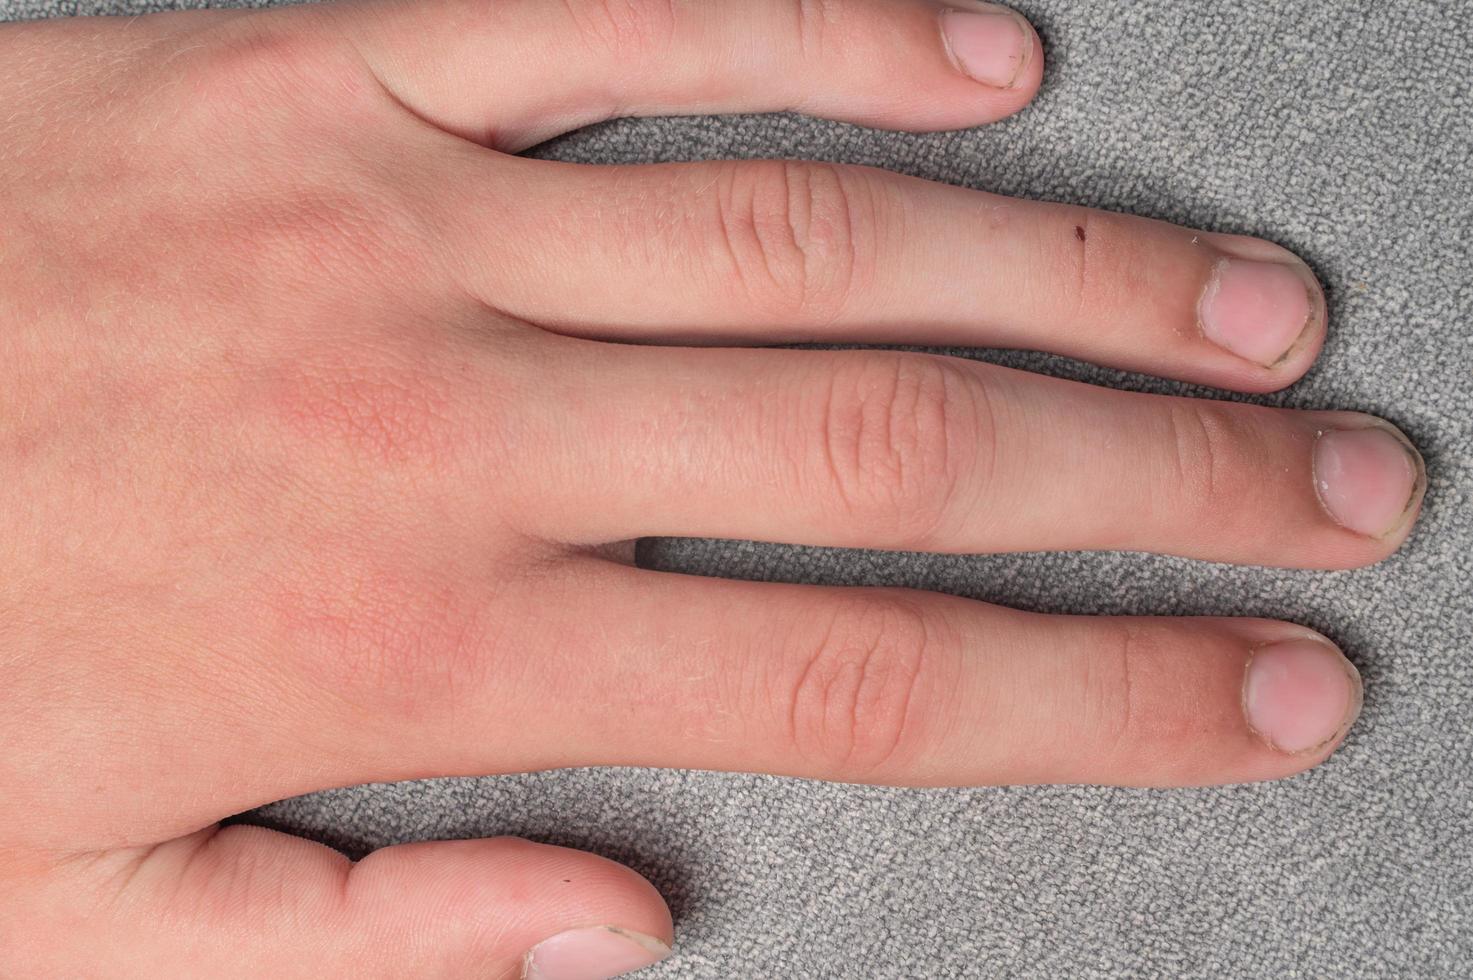 uñas sucias y largas con rebabas, dedos y uñas de un niño sobre un fondo gris. foto